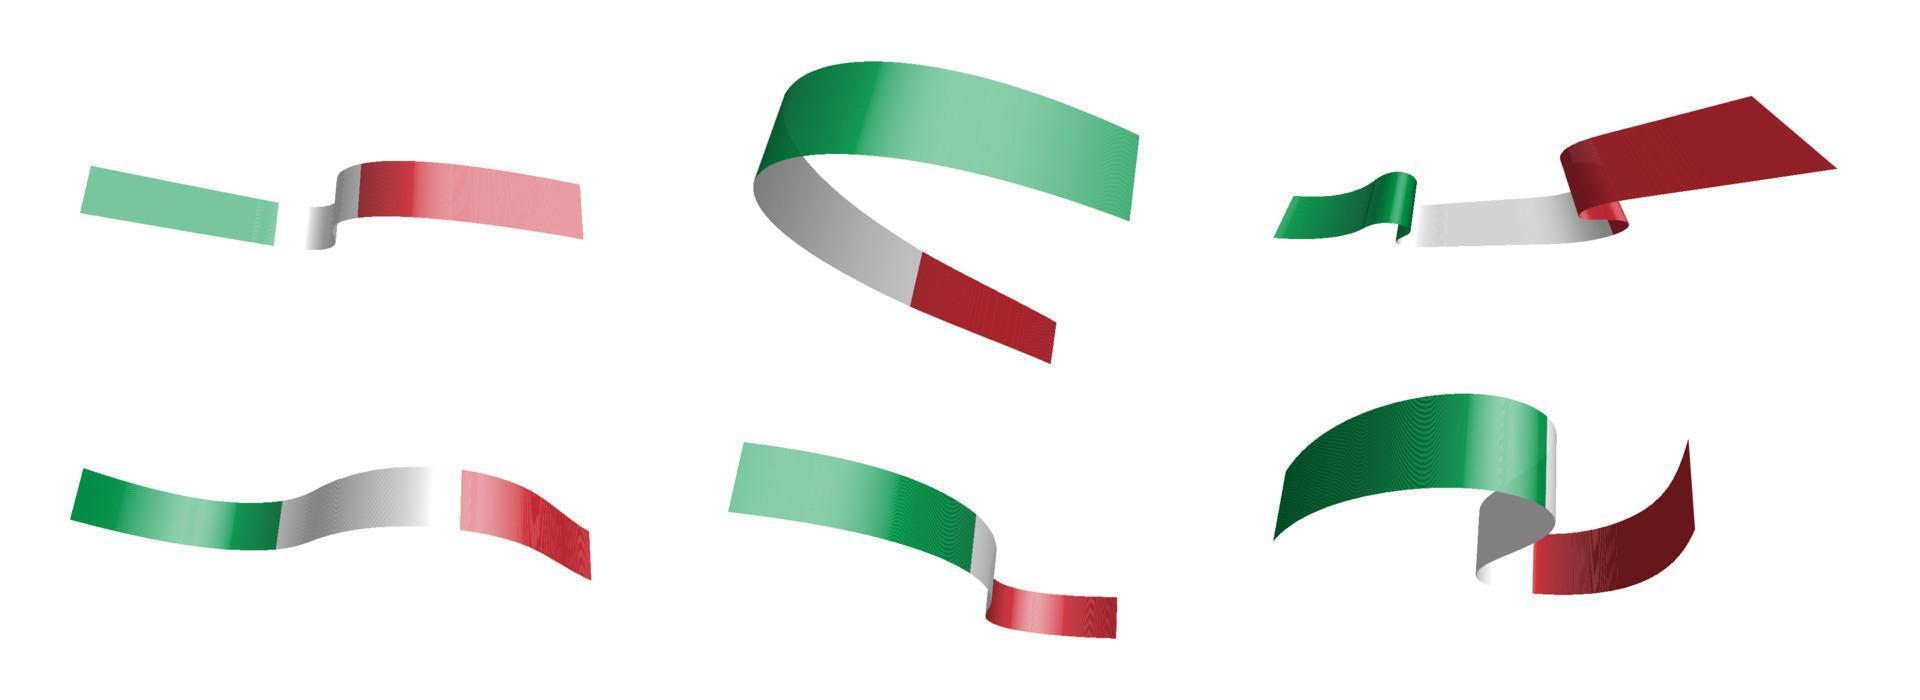 uppsättning semesterband. italienska flaggan vajar i vinden. uppdelning i nedre och övre skikt. designelement. vektor på en vit bakgrund